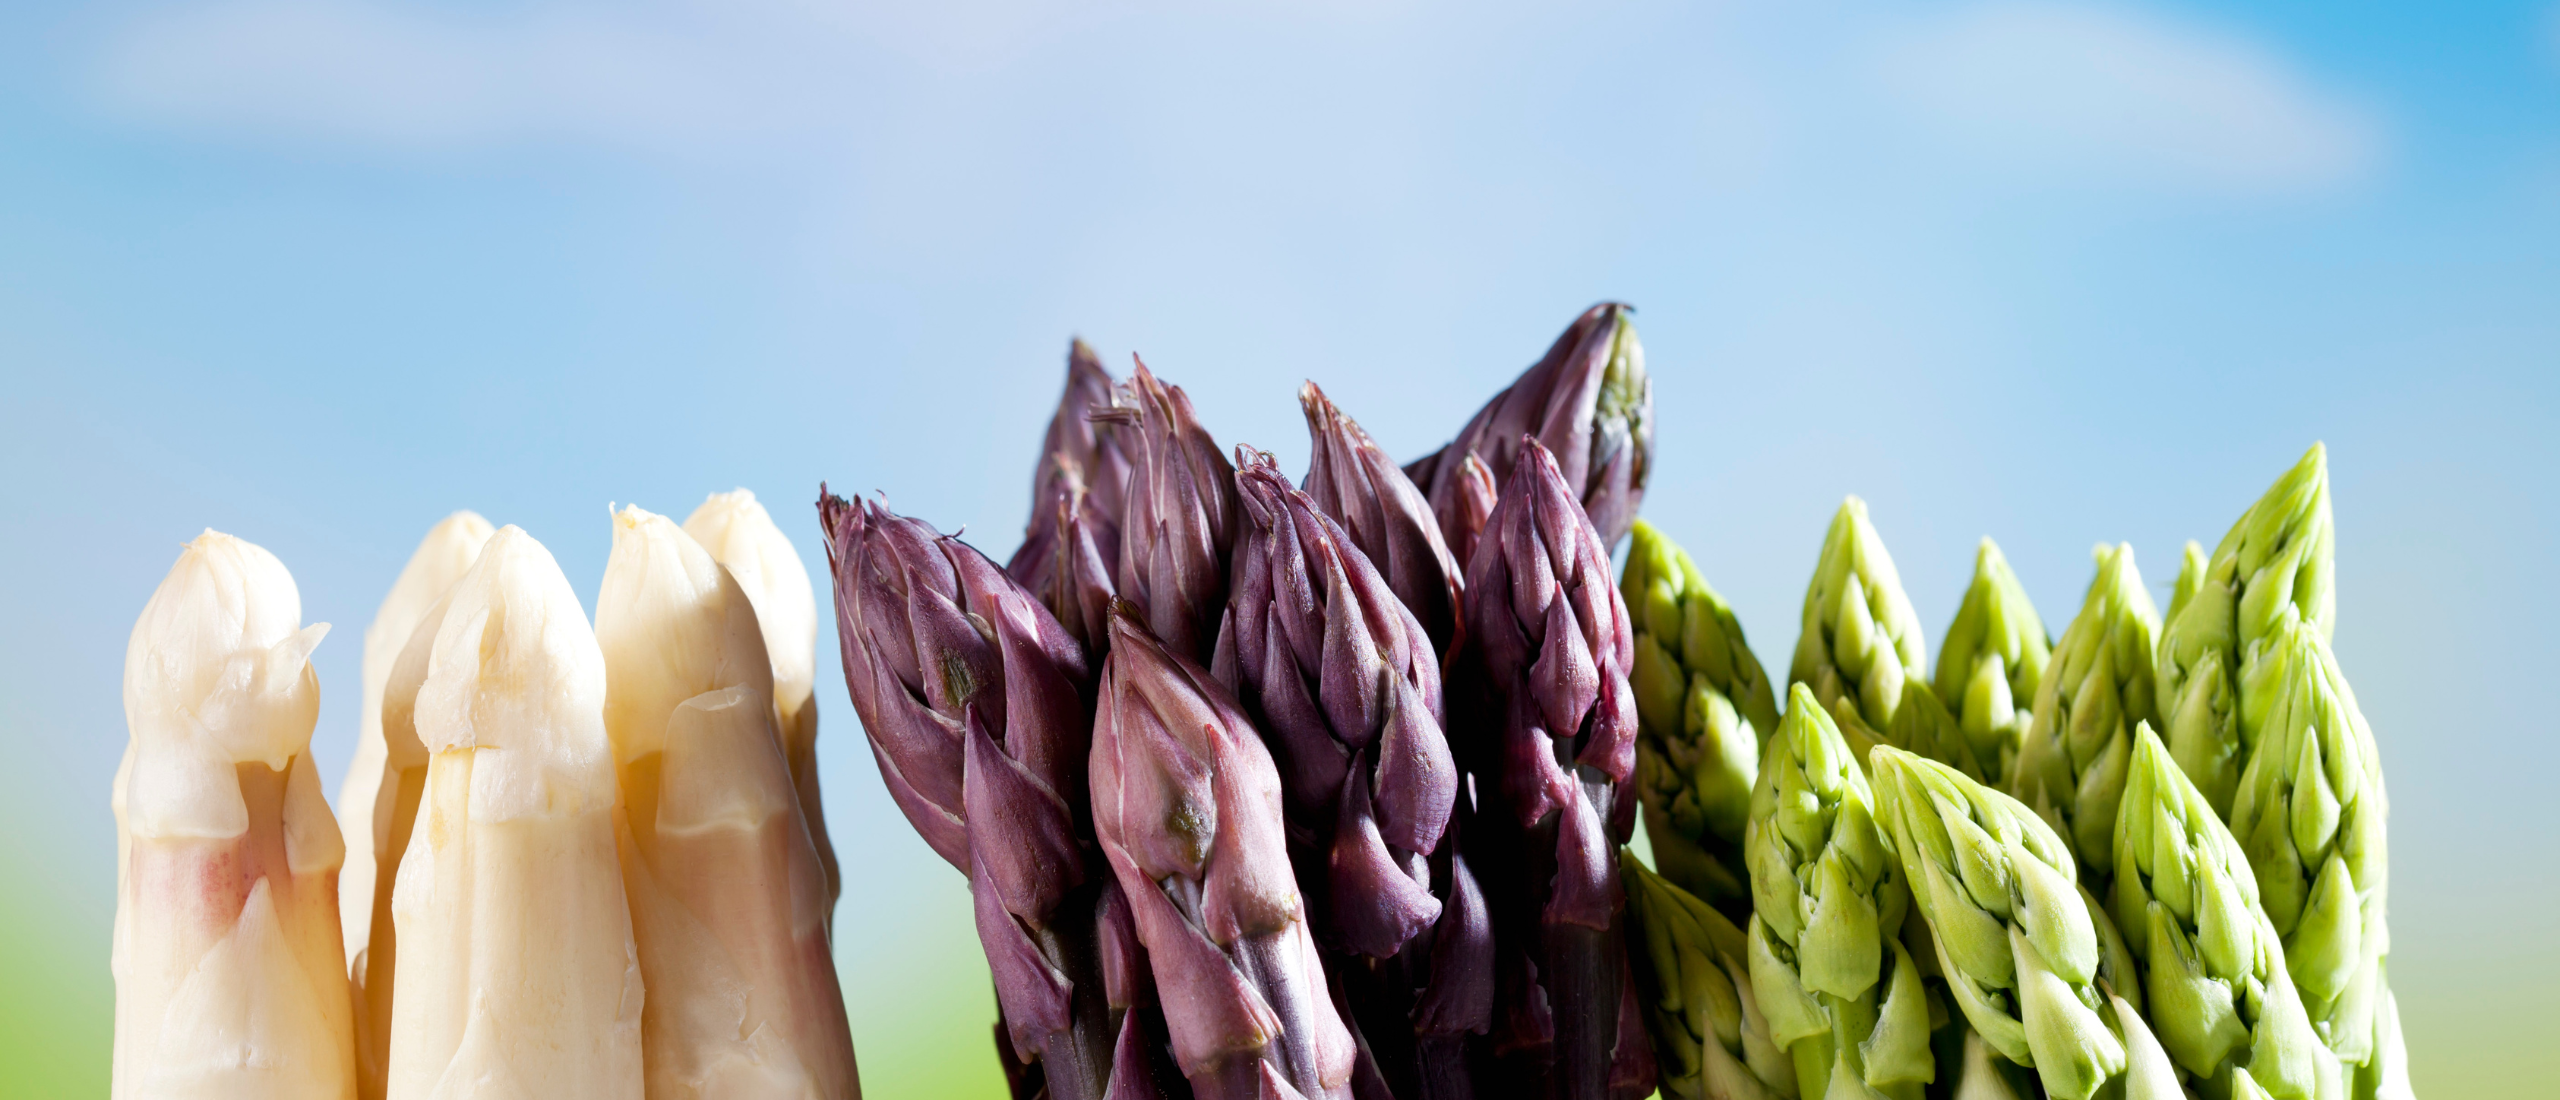 Groene, witte of paarse asperges: wat zijn de verschillen?